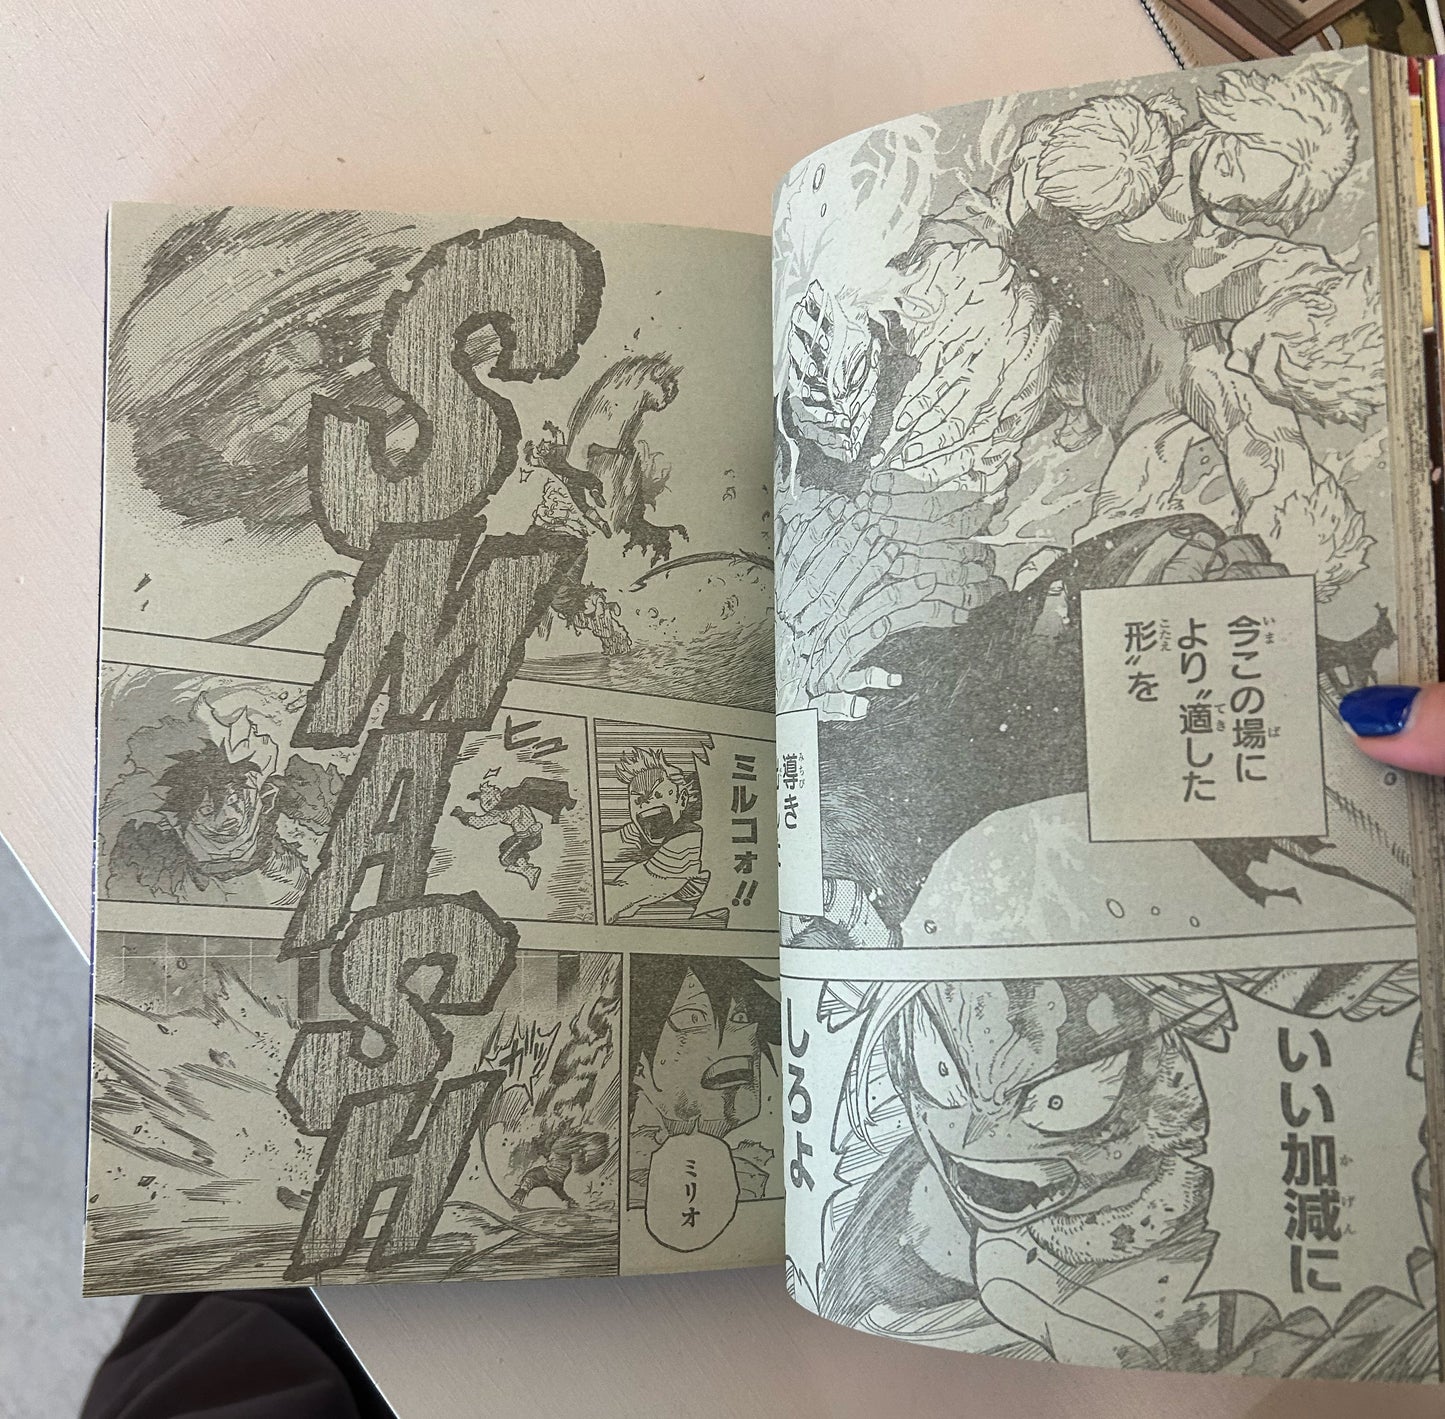 Revista - One Piece Shonen Jump